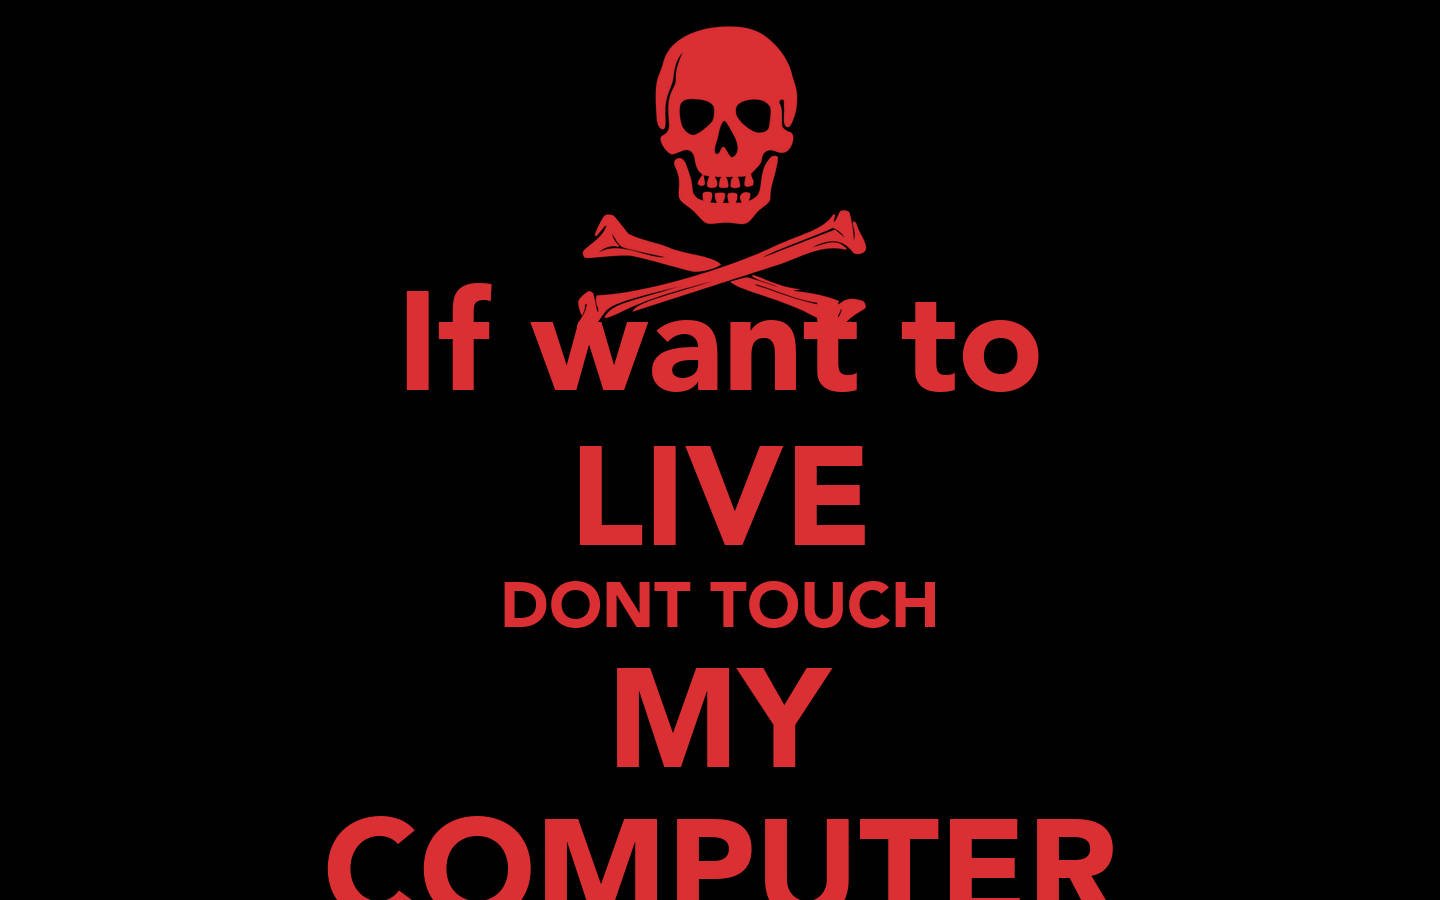 Обои руки убрал. Не трогай мой компьютер обои. Обои не трогать мой компьютер. Прикольные обои с надписями. Обои с надписью не трогай.